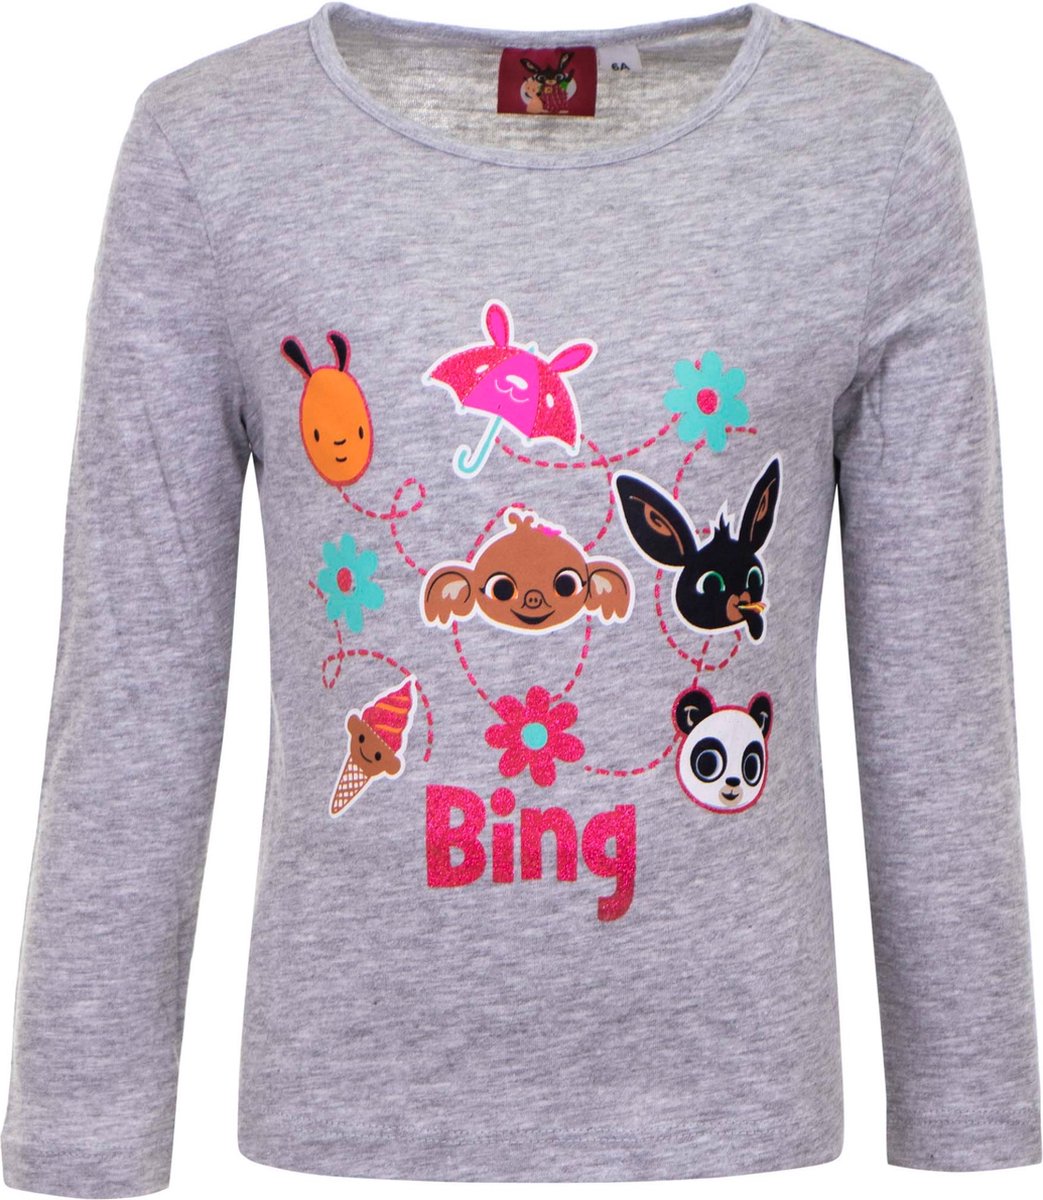 Bing t-shirt met lange mouwen grijs - Bing - Bing t-shirt longsleeve - T-shirt voor kinderen - T-shirt voor jongens - T-shirt voor meisjes - Bing Bunny t-shirt - Bing shirt